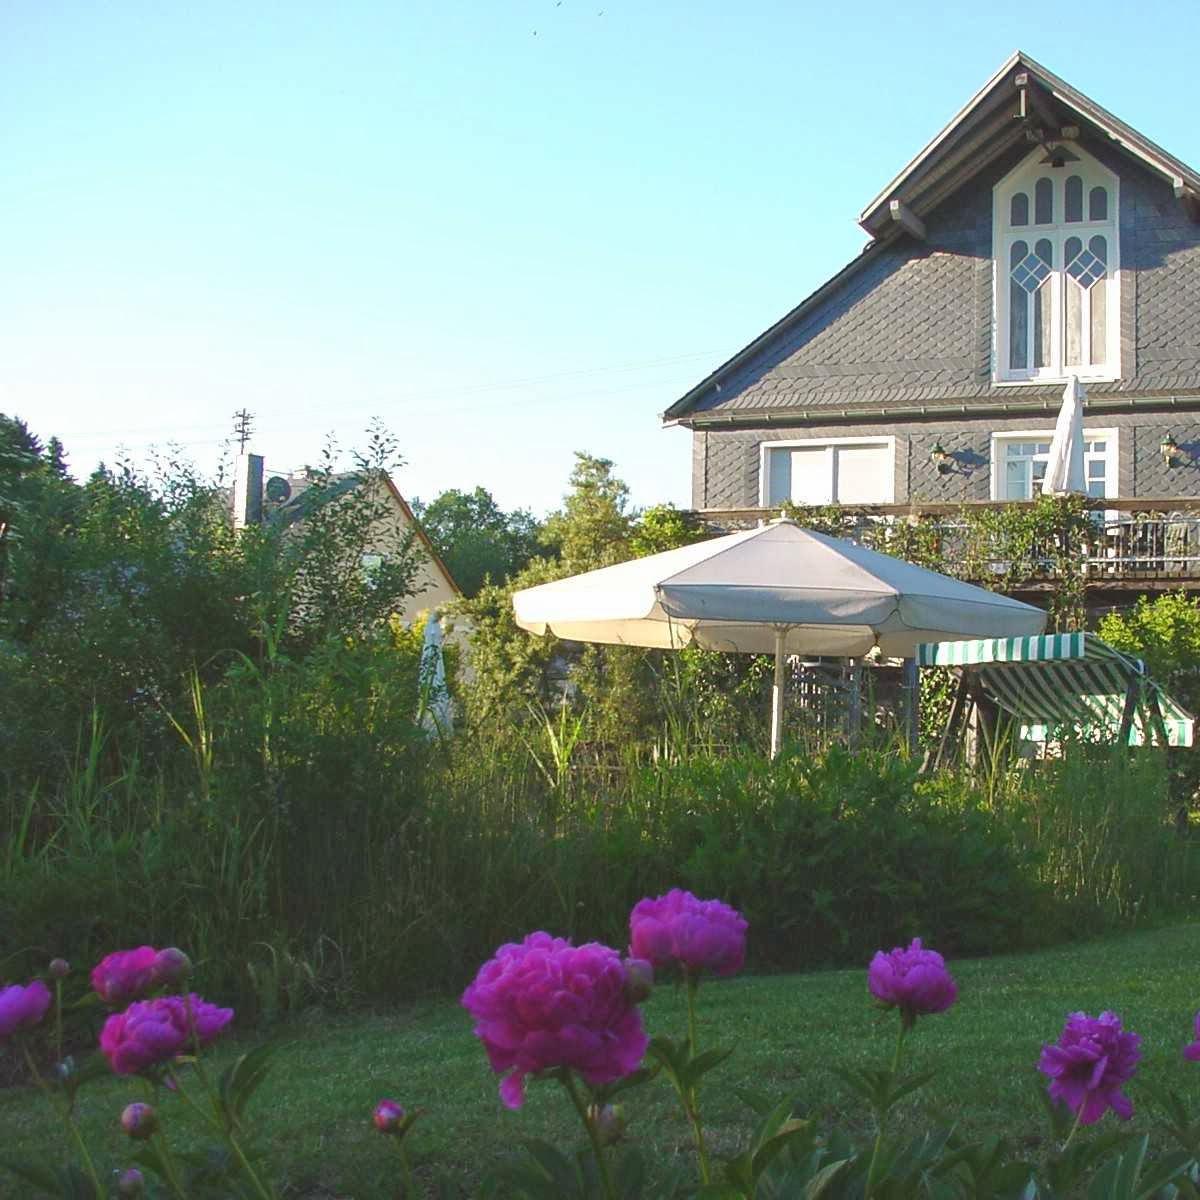 Restaurant "Hotel Toepperhof Nichtraucherhaus mit Sauna" in Tiefenbach